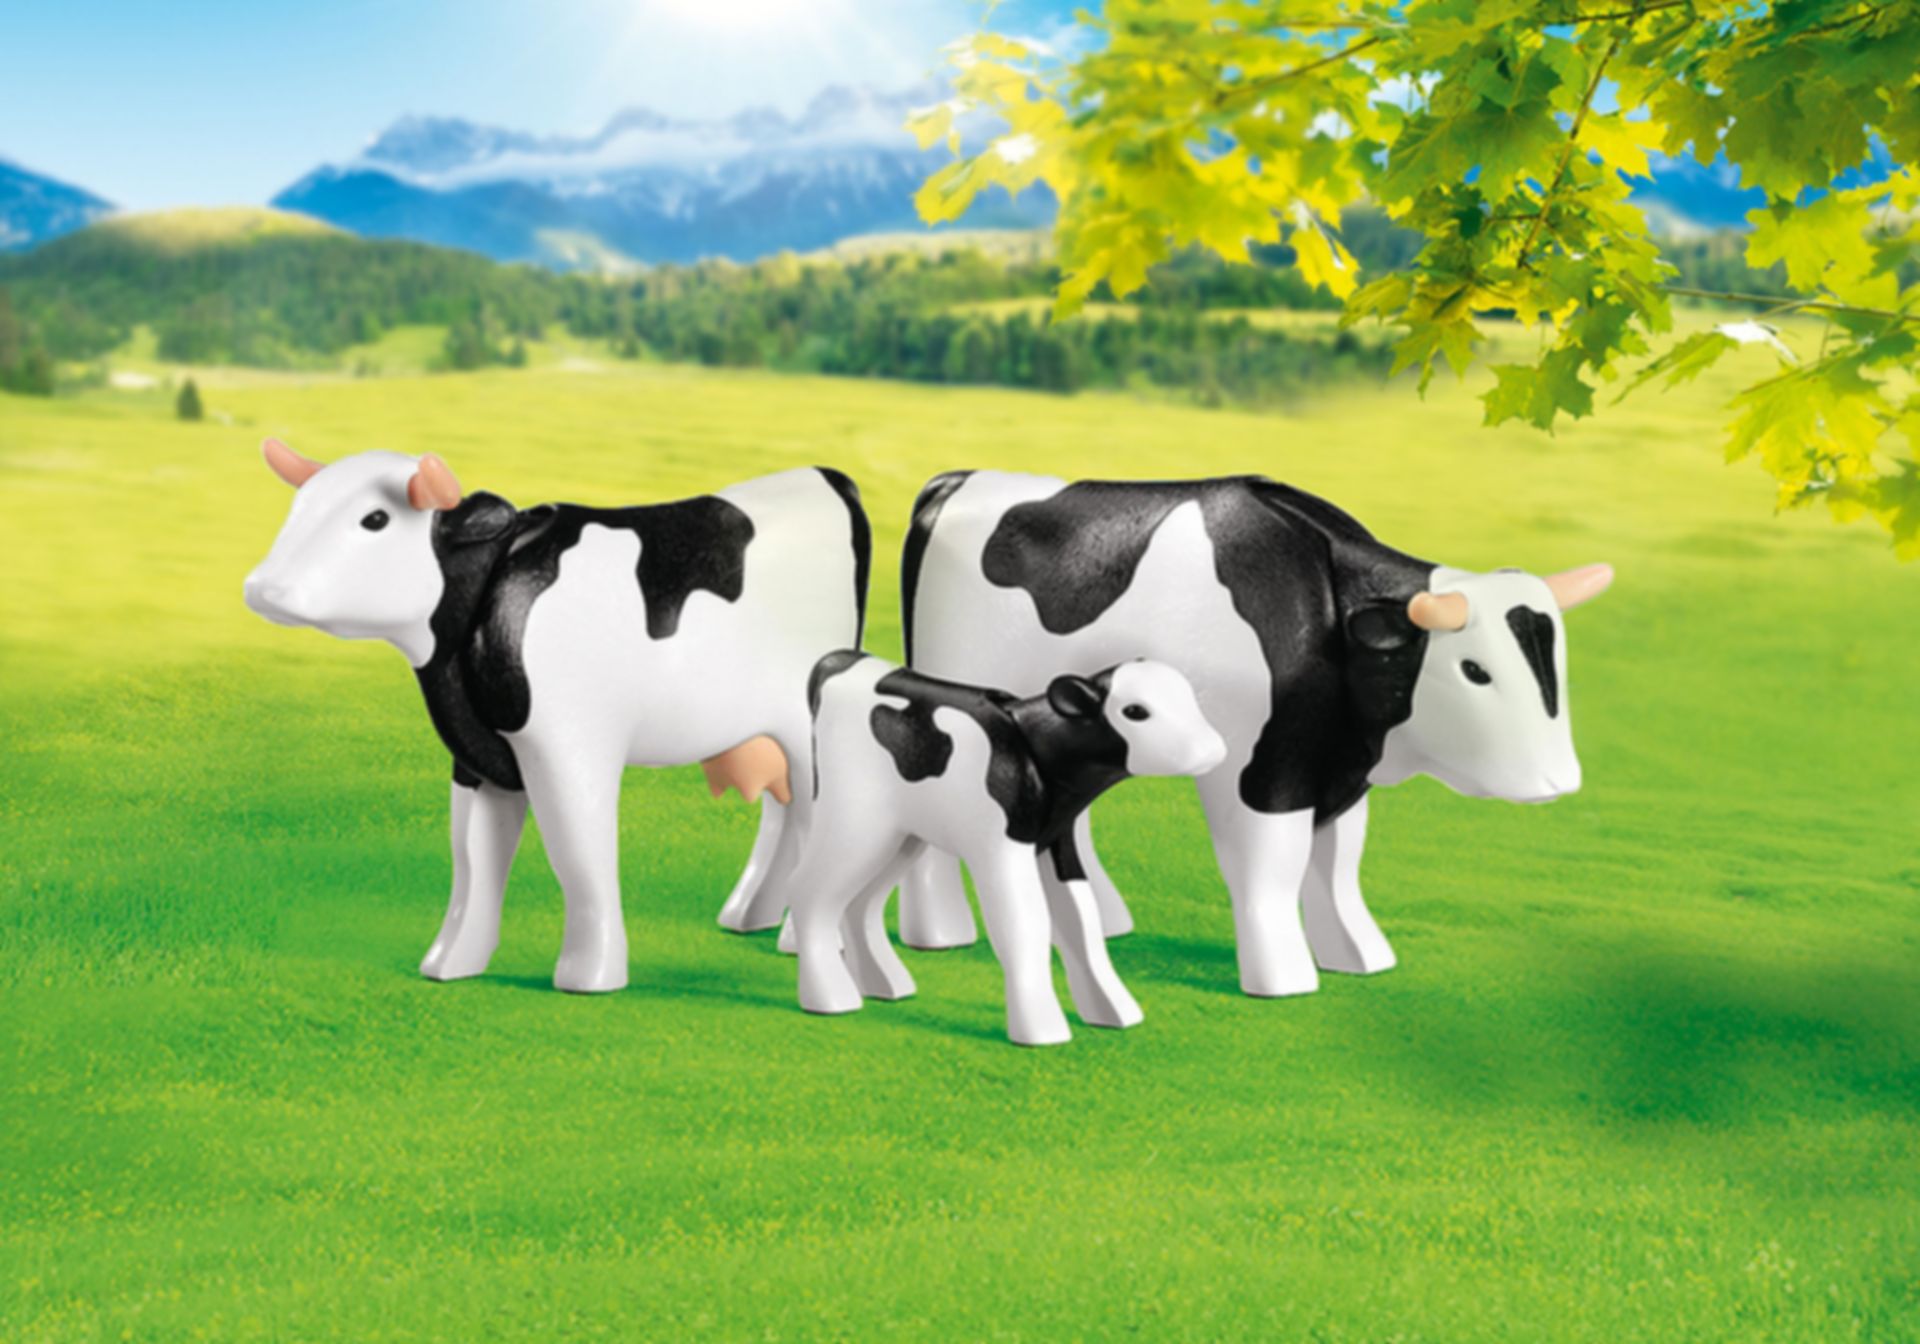 complexiteit Implementeren Anders 2 Zwarte koeien met kalfje kopen aan de beste prijs - PlaymoFinder